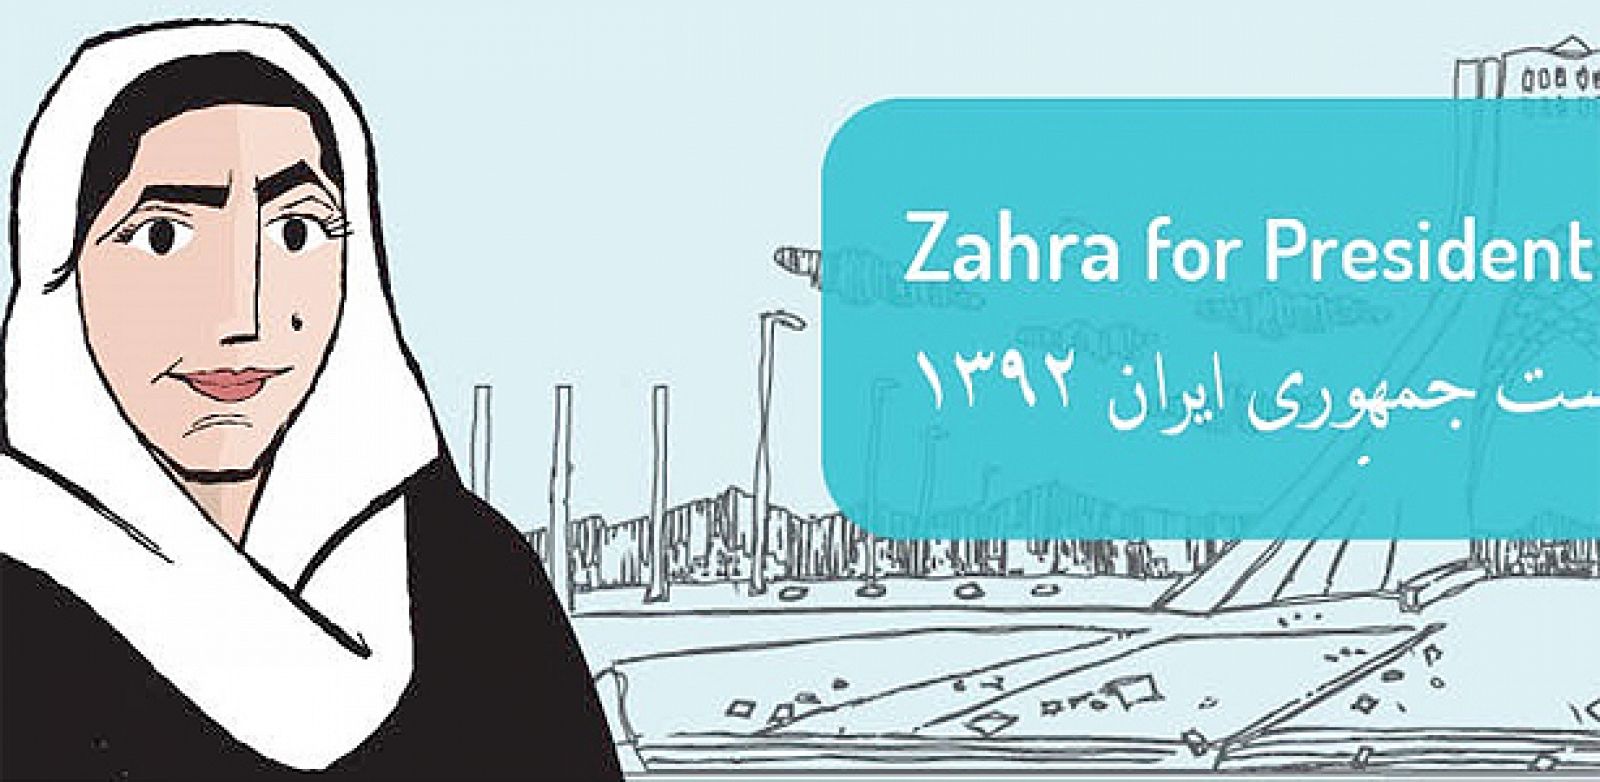 La propaganda de Zahra como candidata a las elecciones de Irán